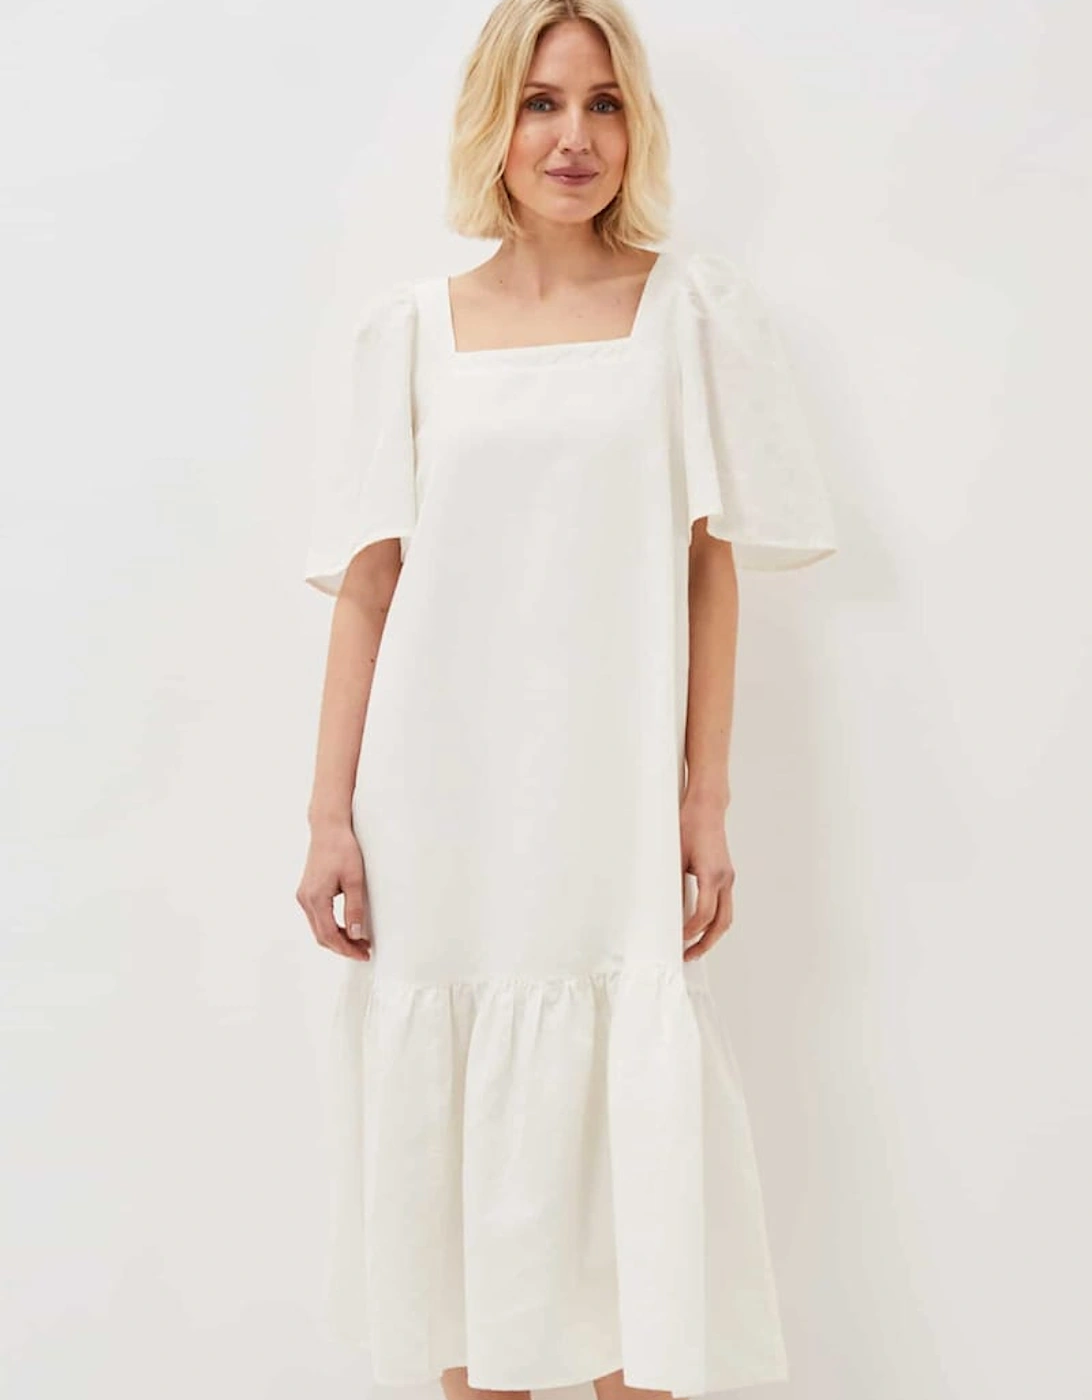 Claria White Midi Dress, 7 of 6